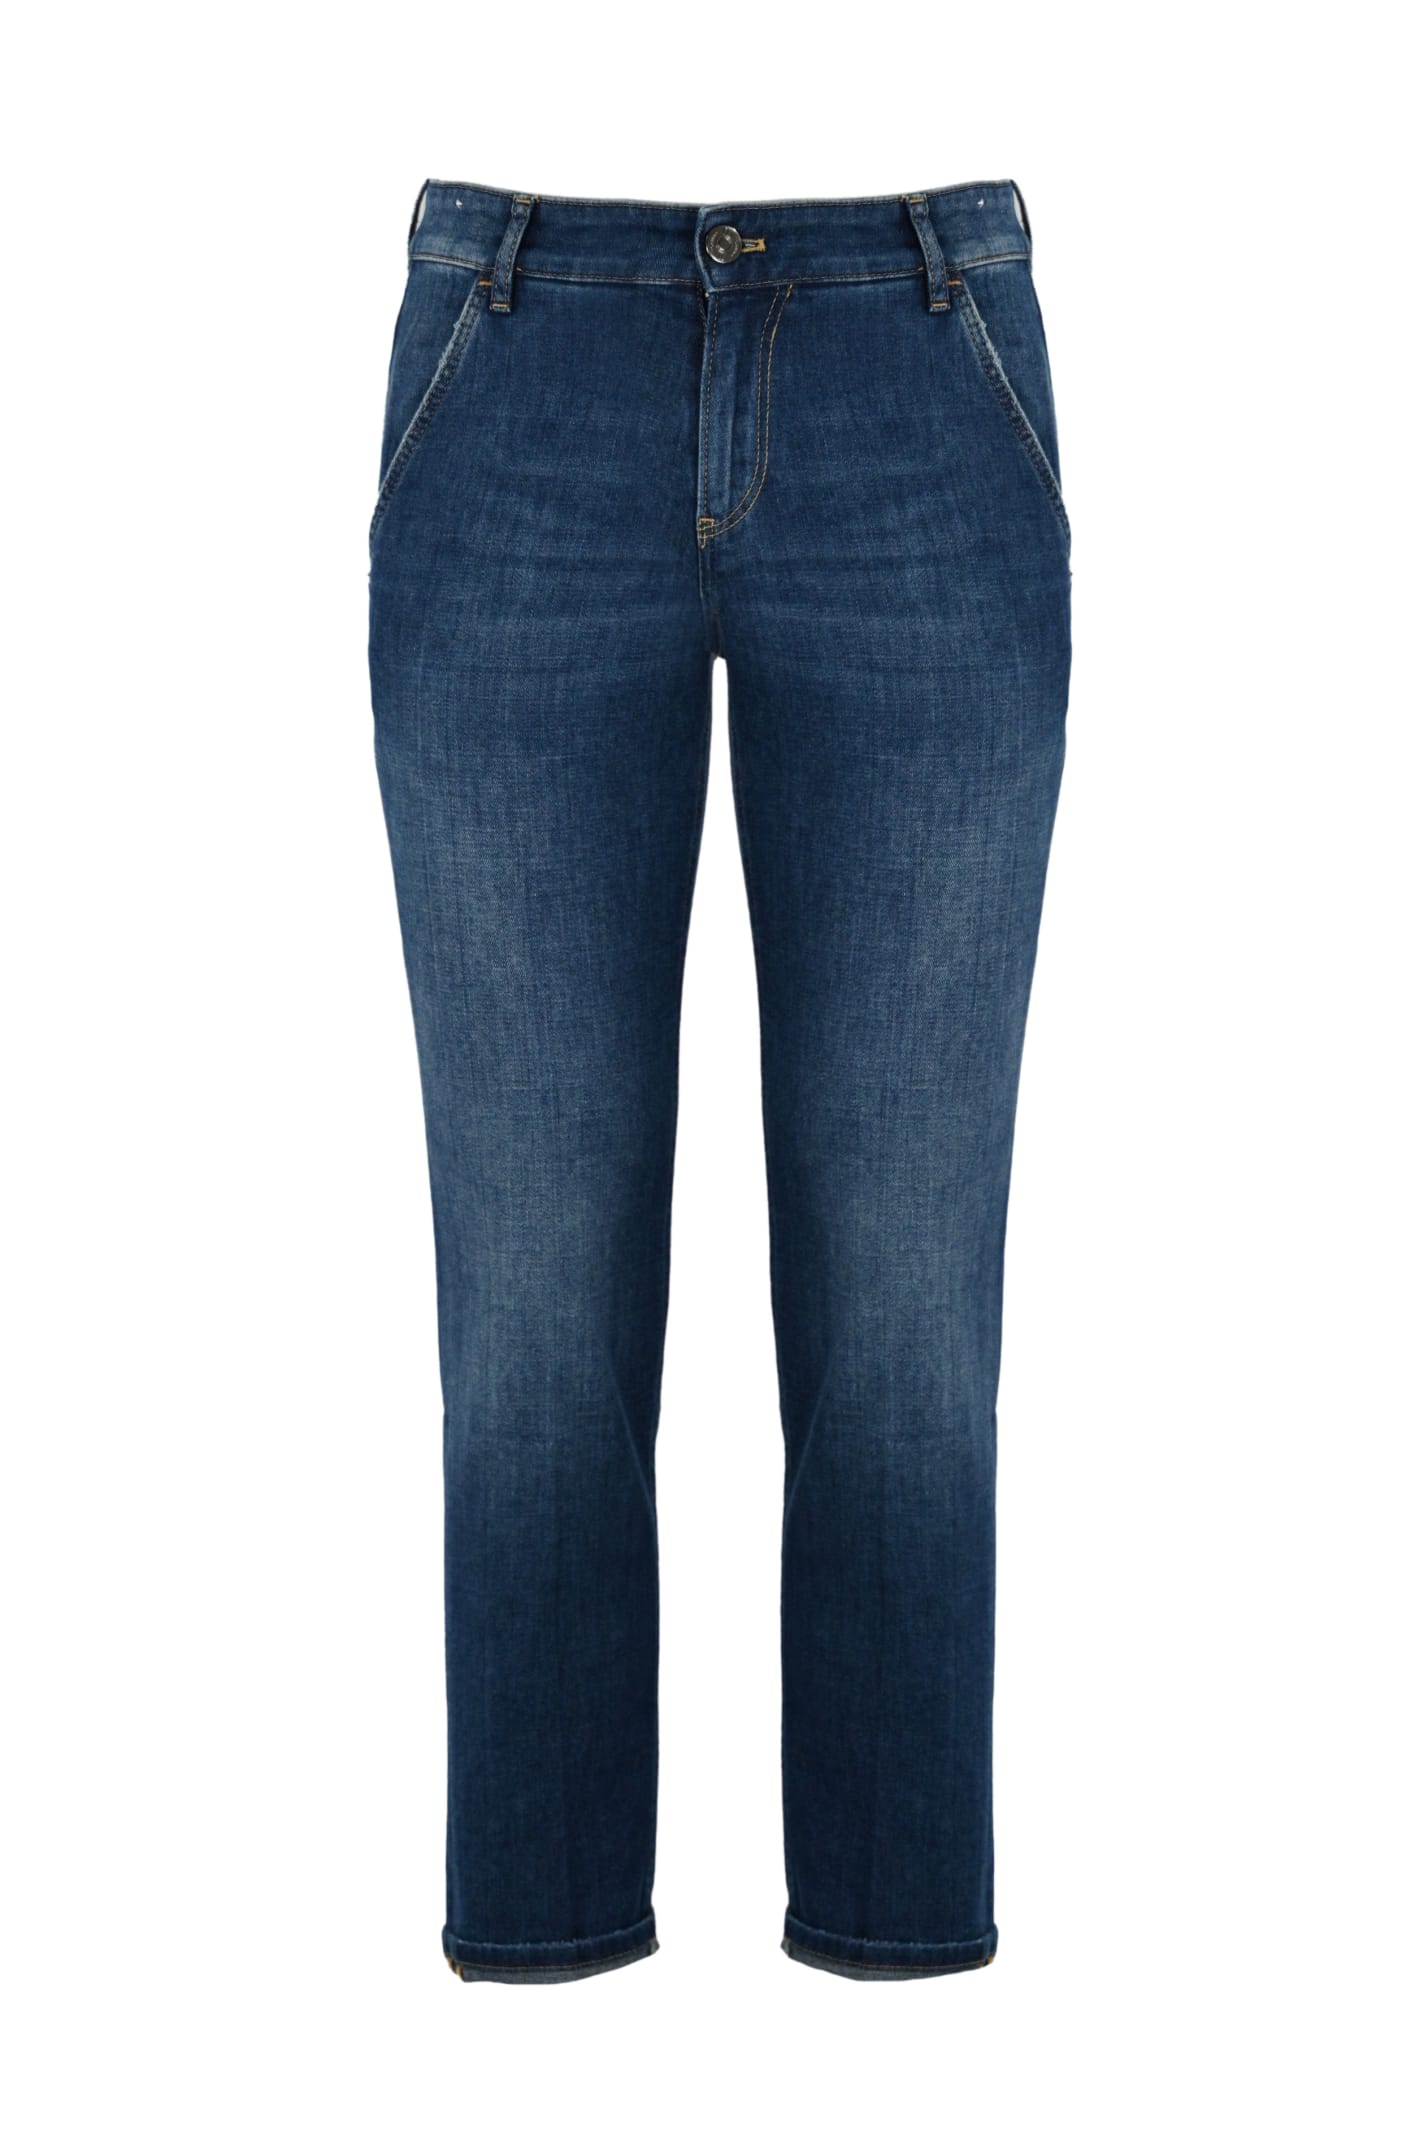 Shop Pt01 Indie 5 Pocket Jeans